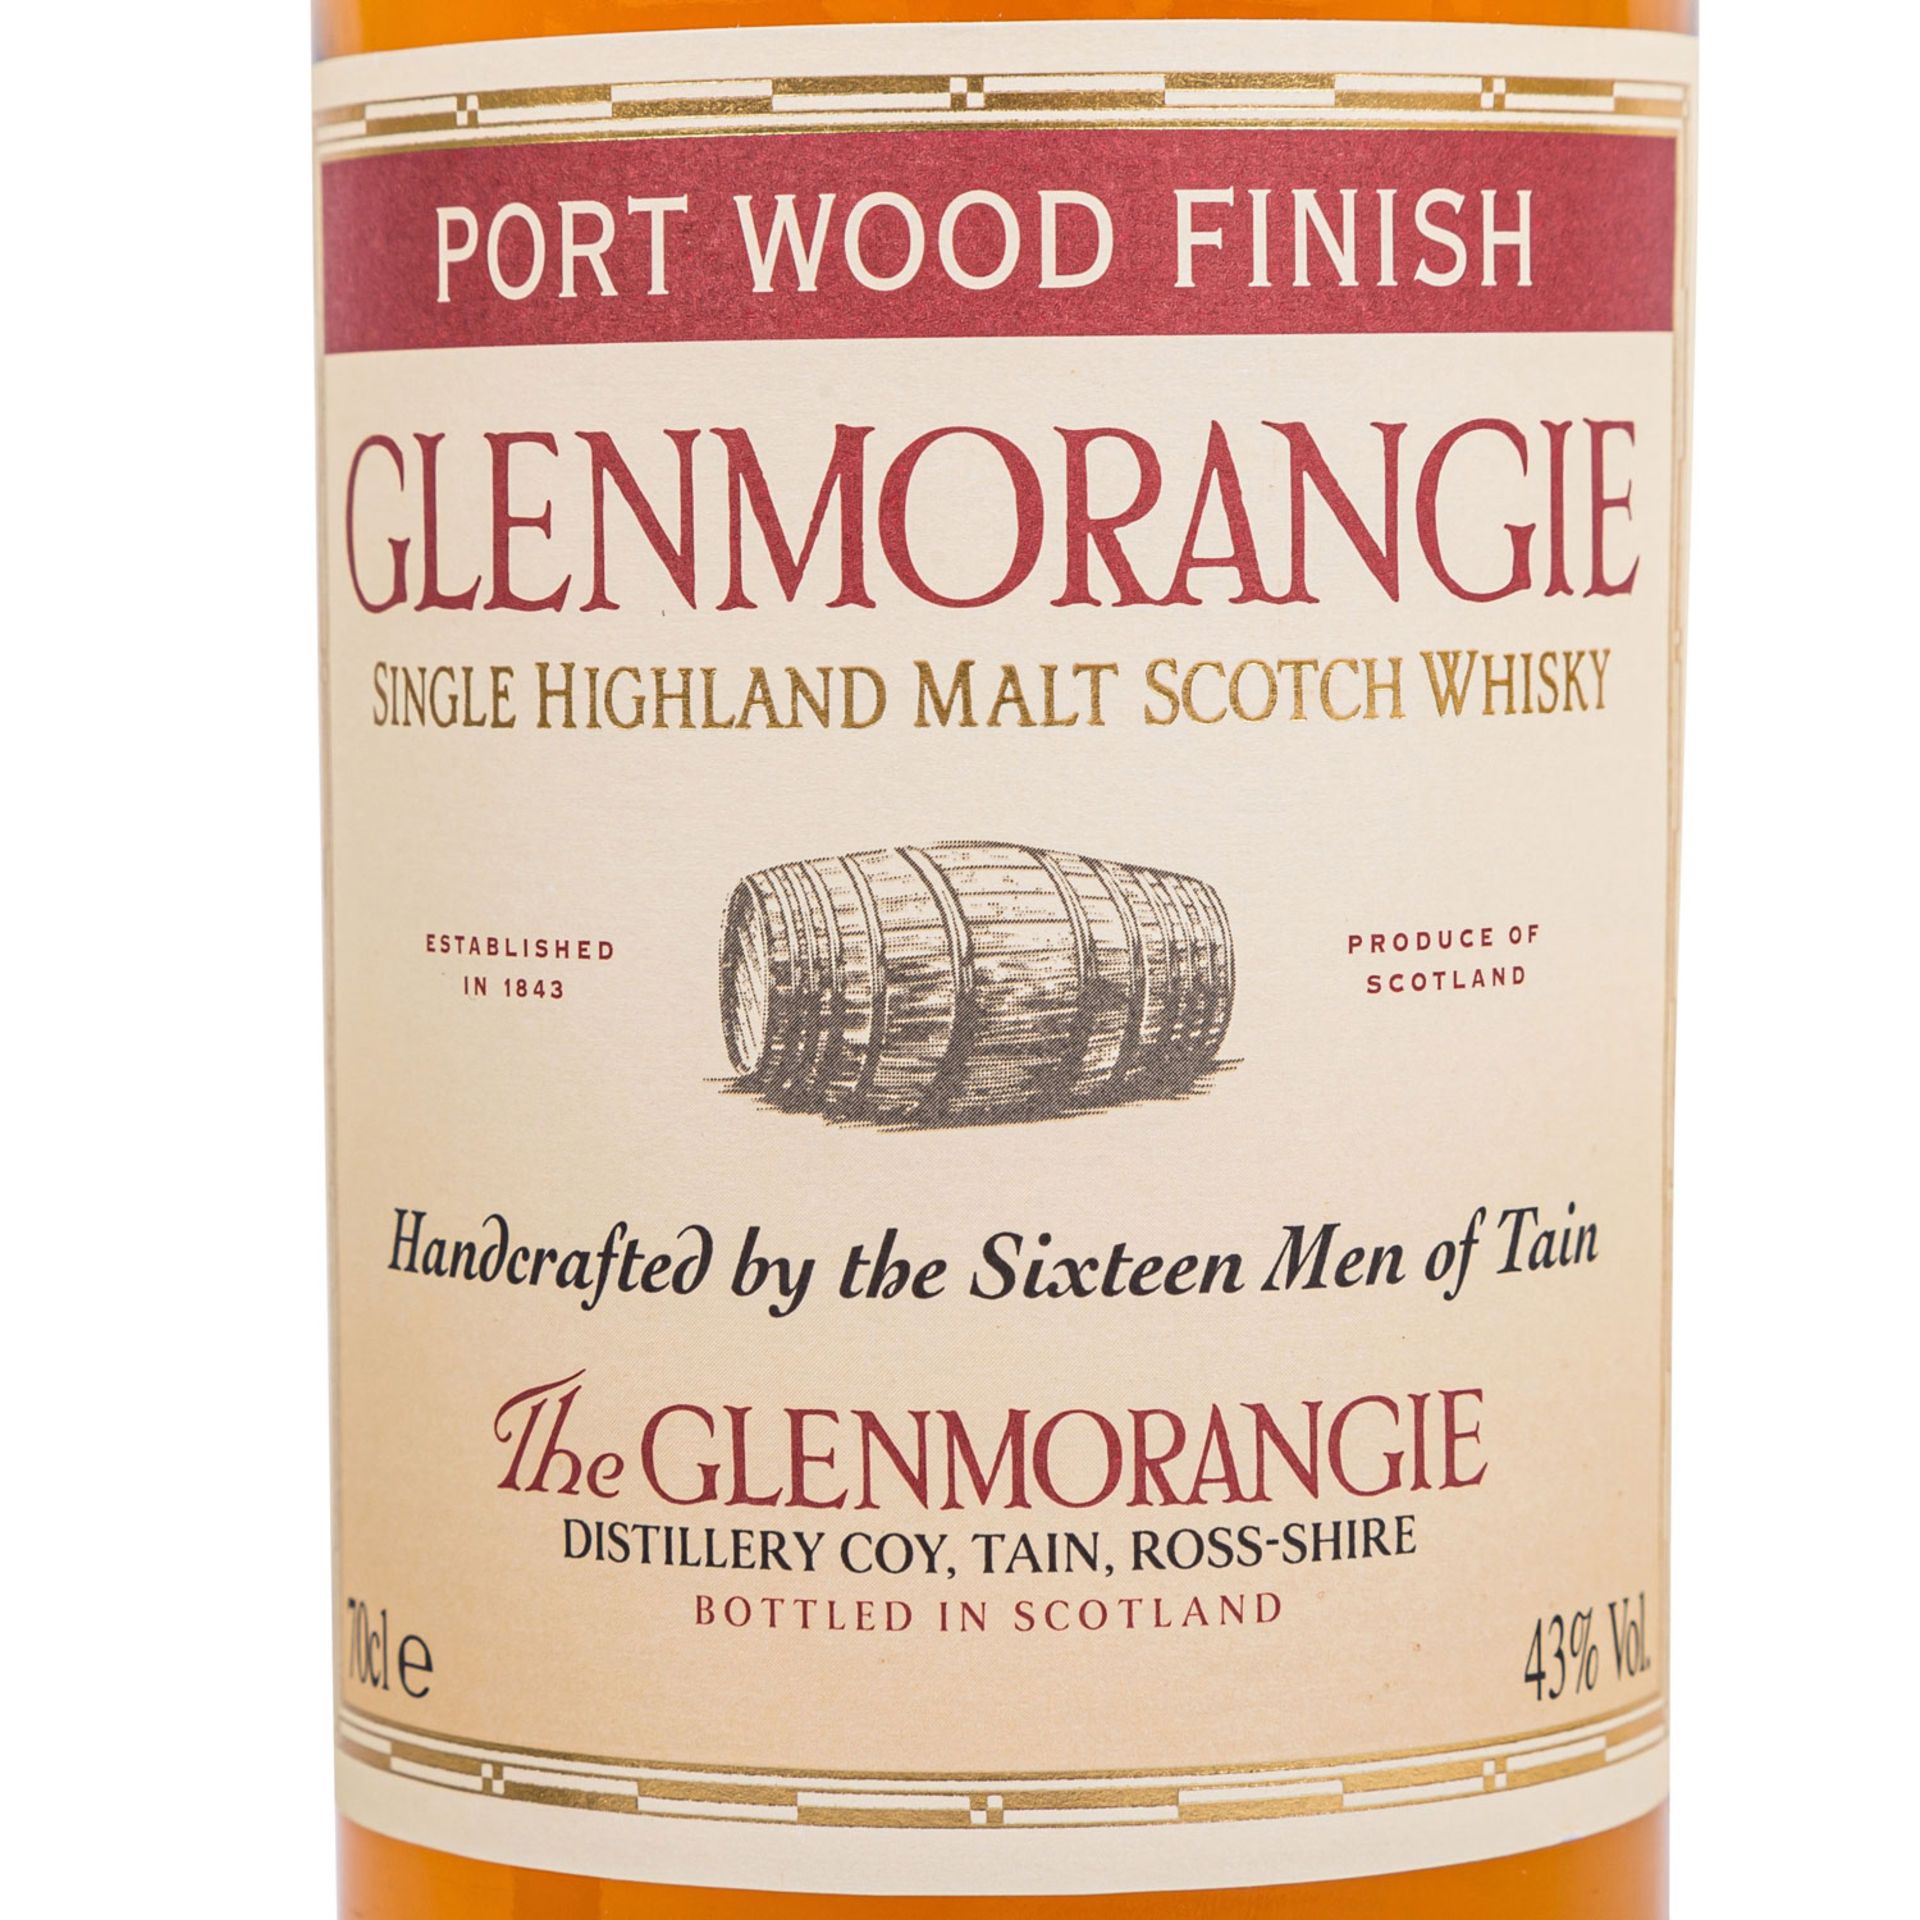 GLENMORANGIE PORT WOOD FINISH Single Malt Scotch Whisky - Image 2 of 7